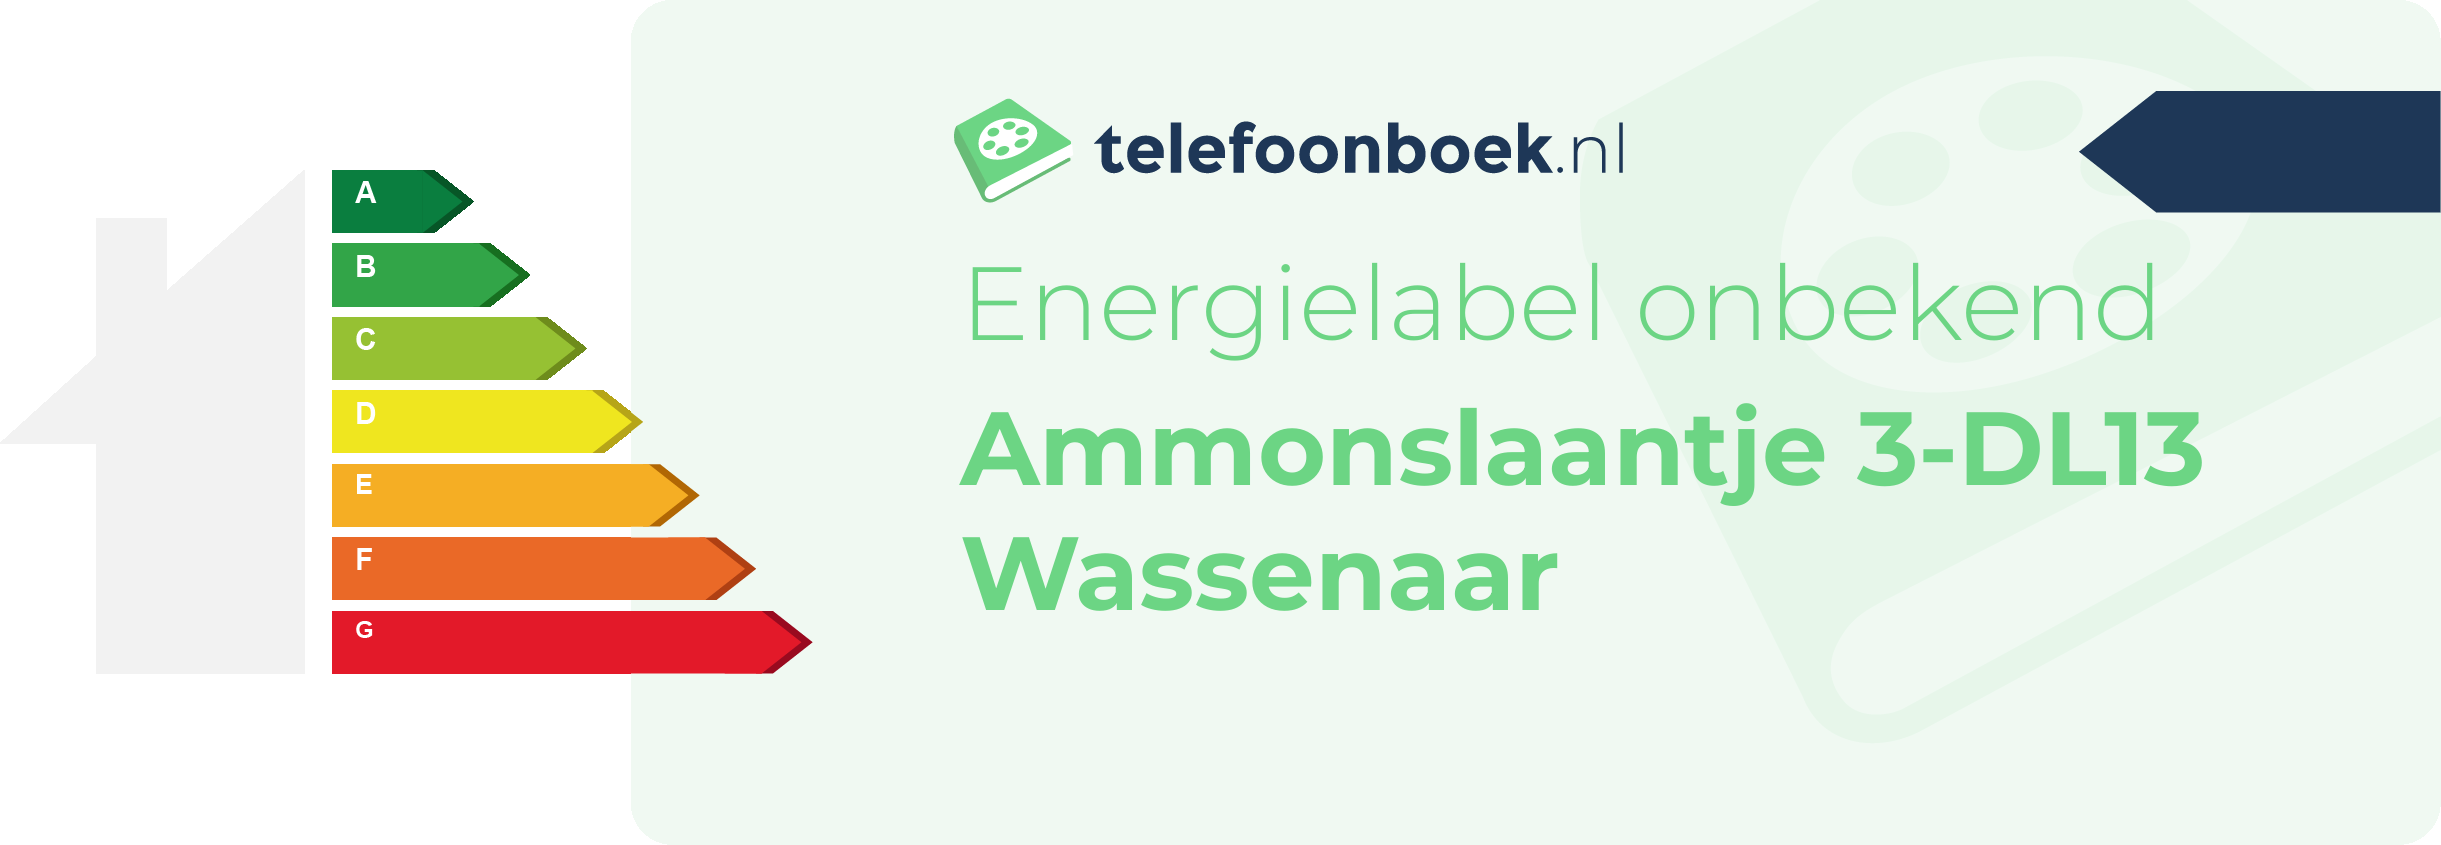 Energielabel Ammonslaantje 3-DL13 Wassenaar